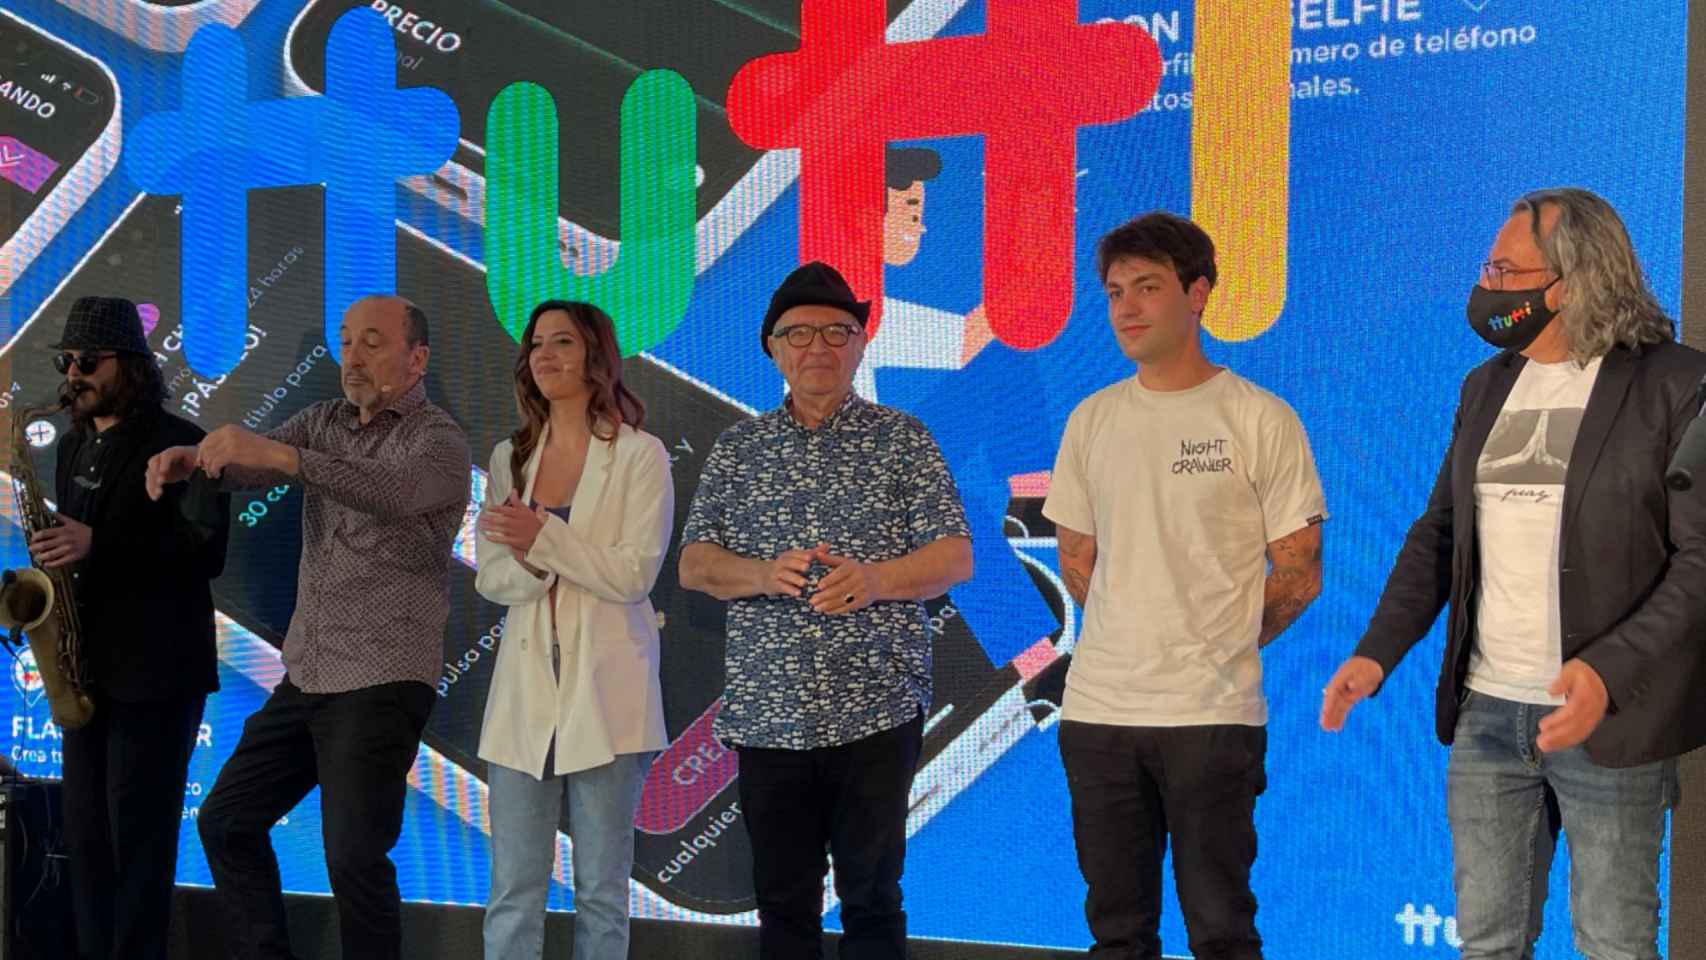 Presentación de Ttutti en Vigo, conducida por Manuel Manquiña y Carlos Veleiro.